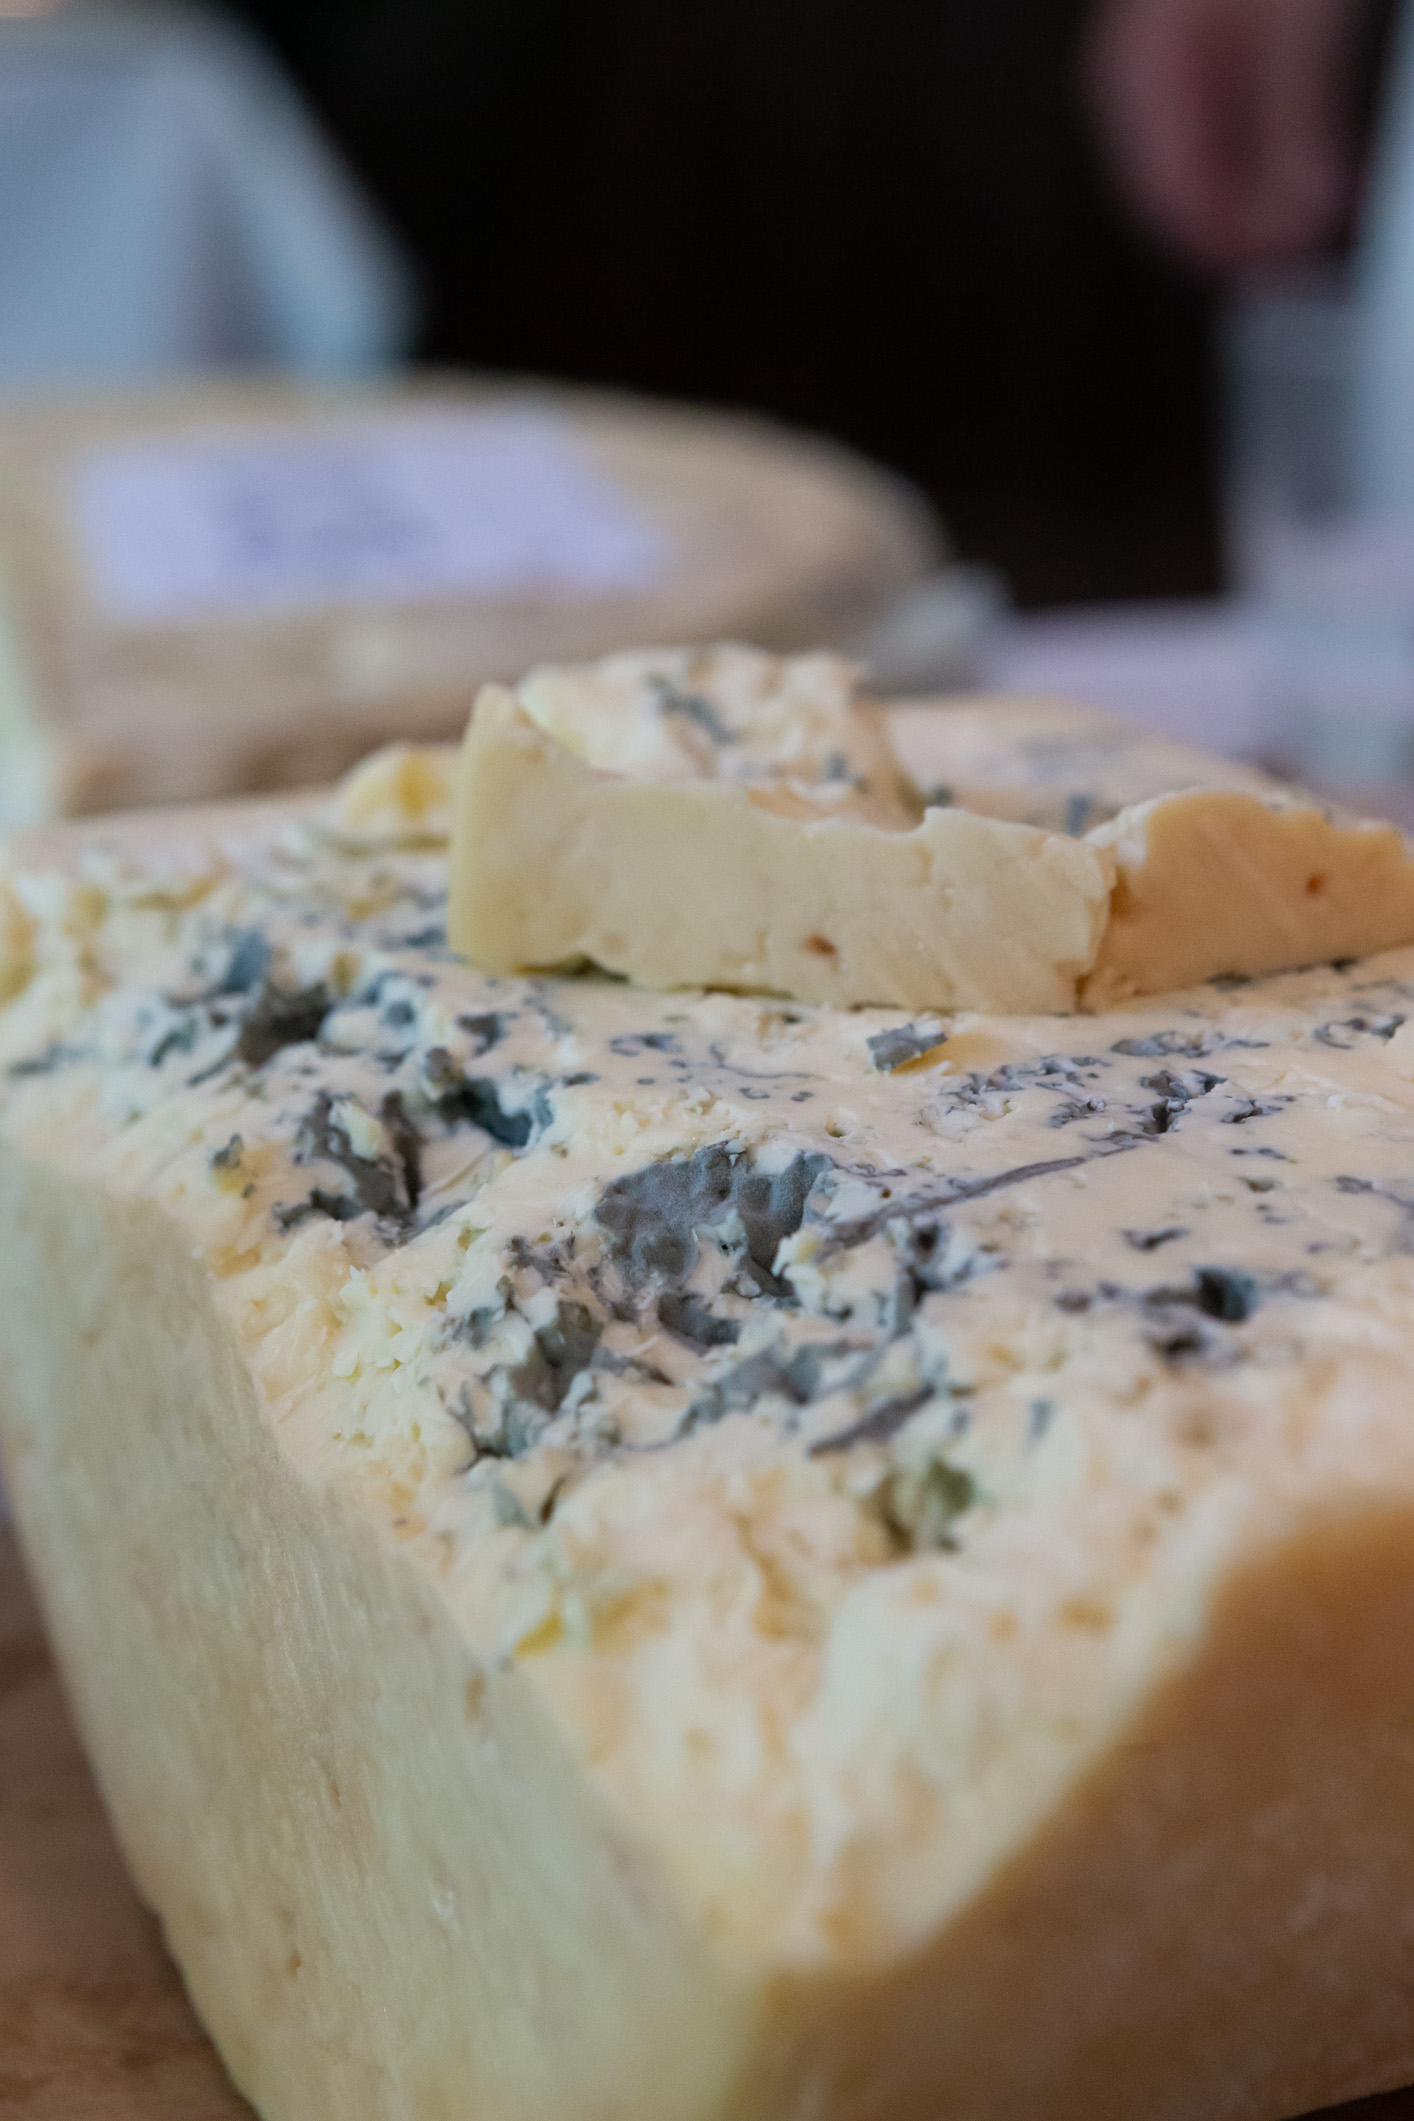 2019 Blue Cheese.jpg